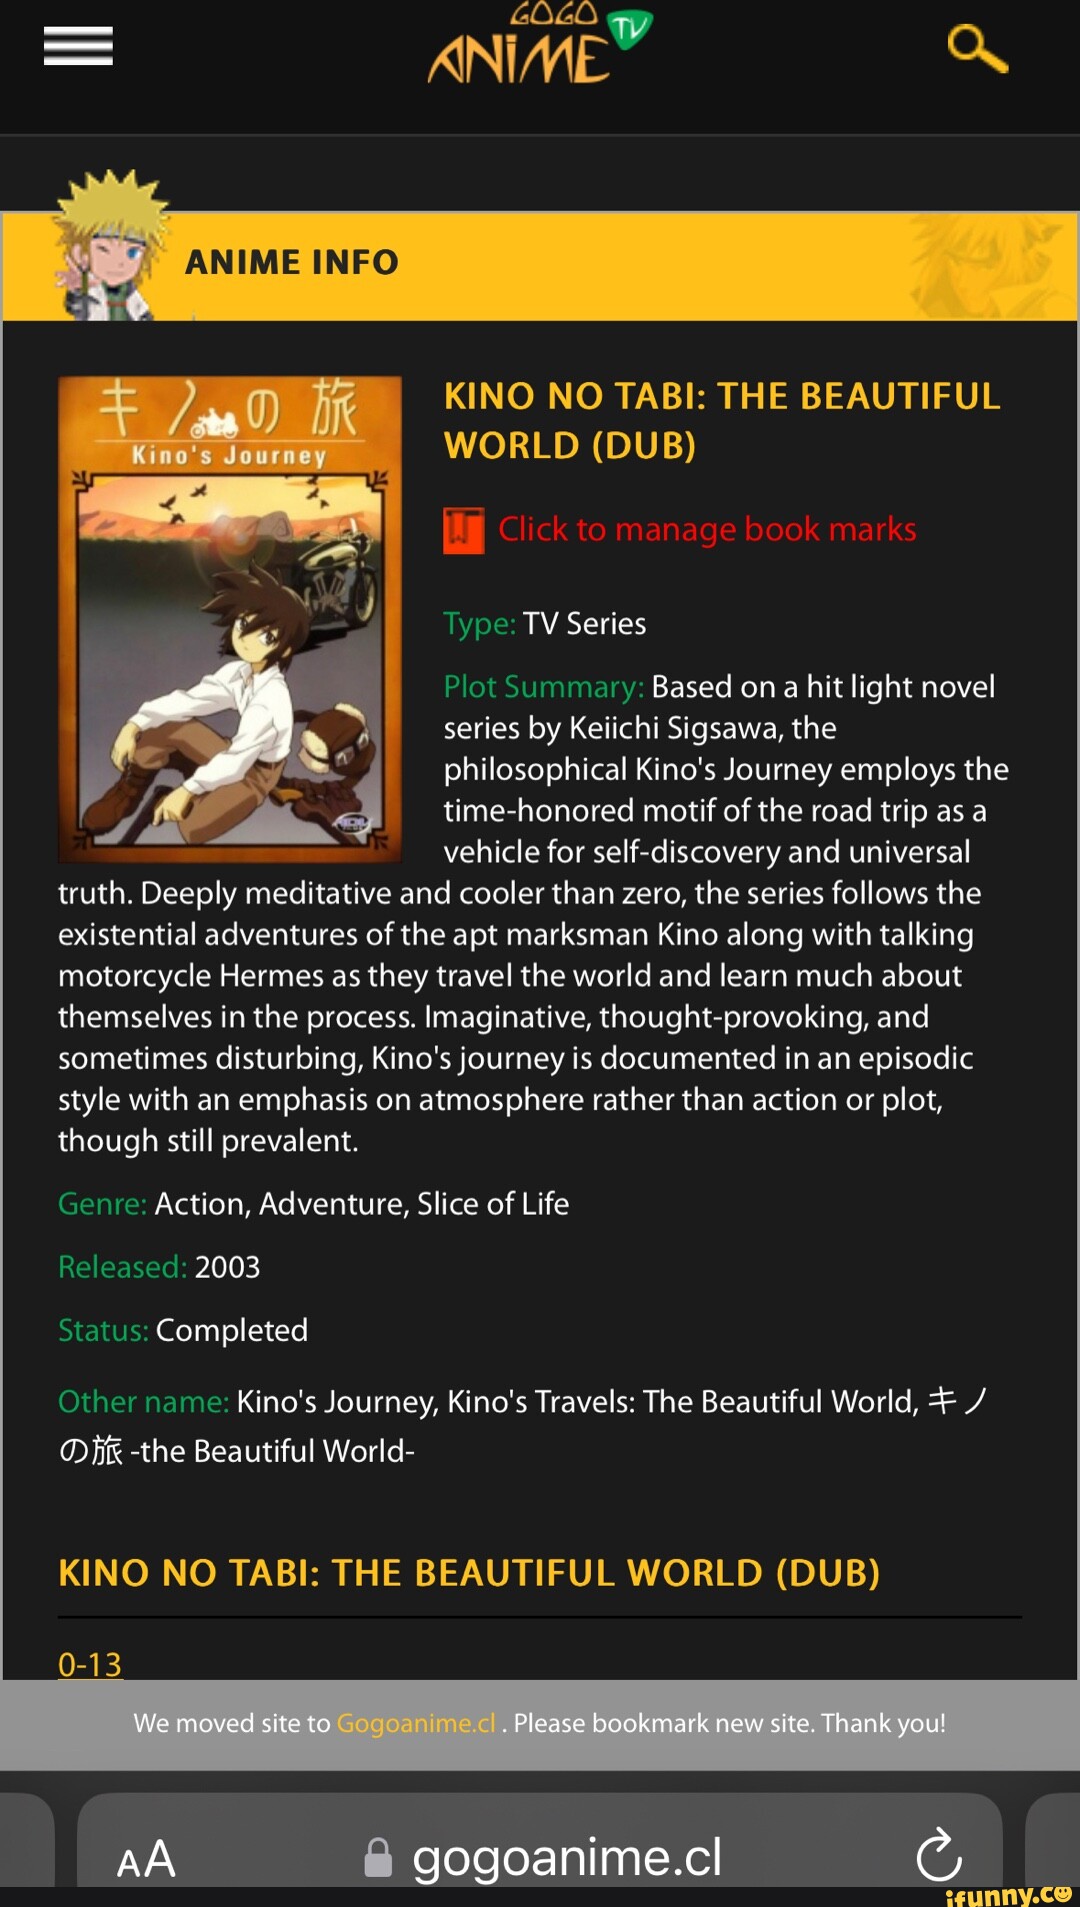 Kino's Journey- the Beautiful World 2: by Sigsawa, Keiichi